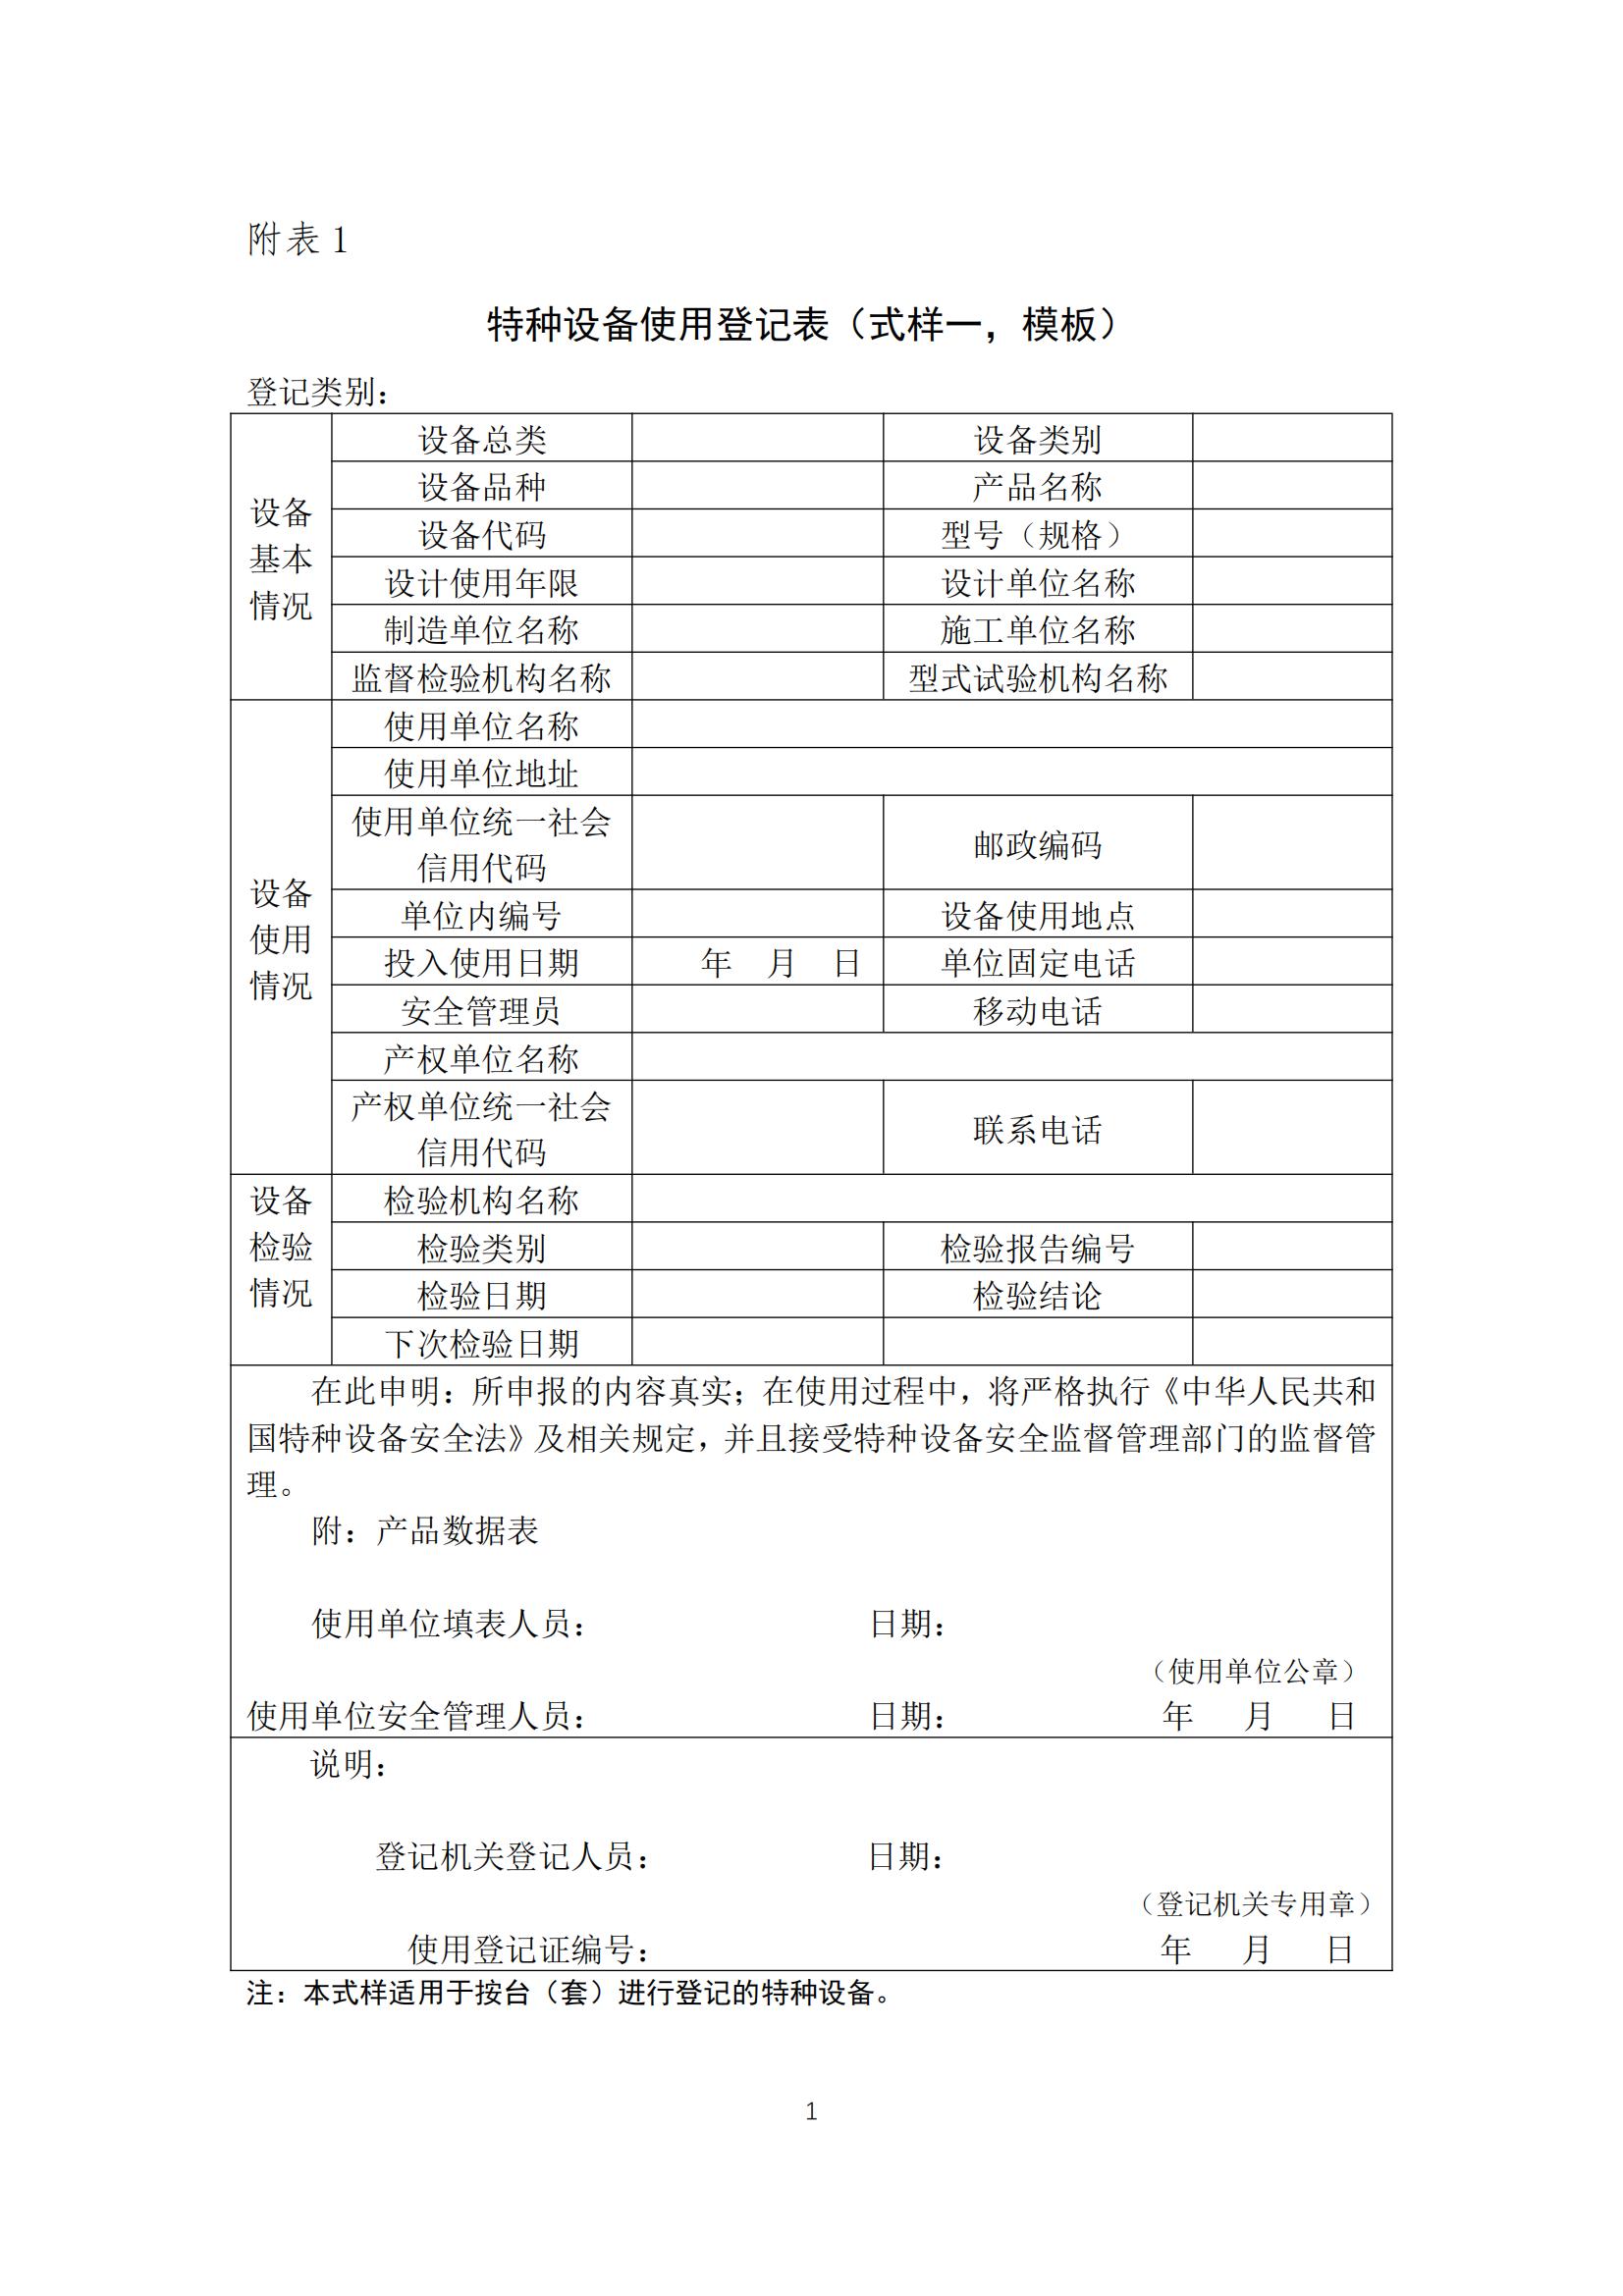 河南省特种设备使用登记表模板